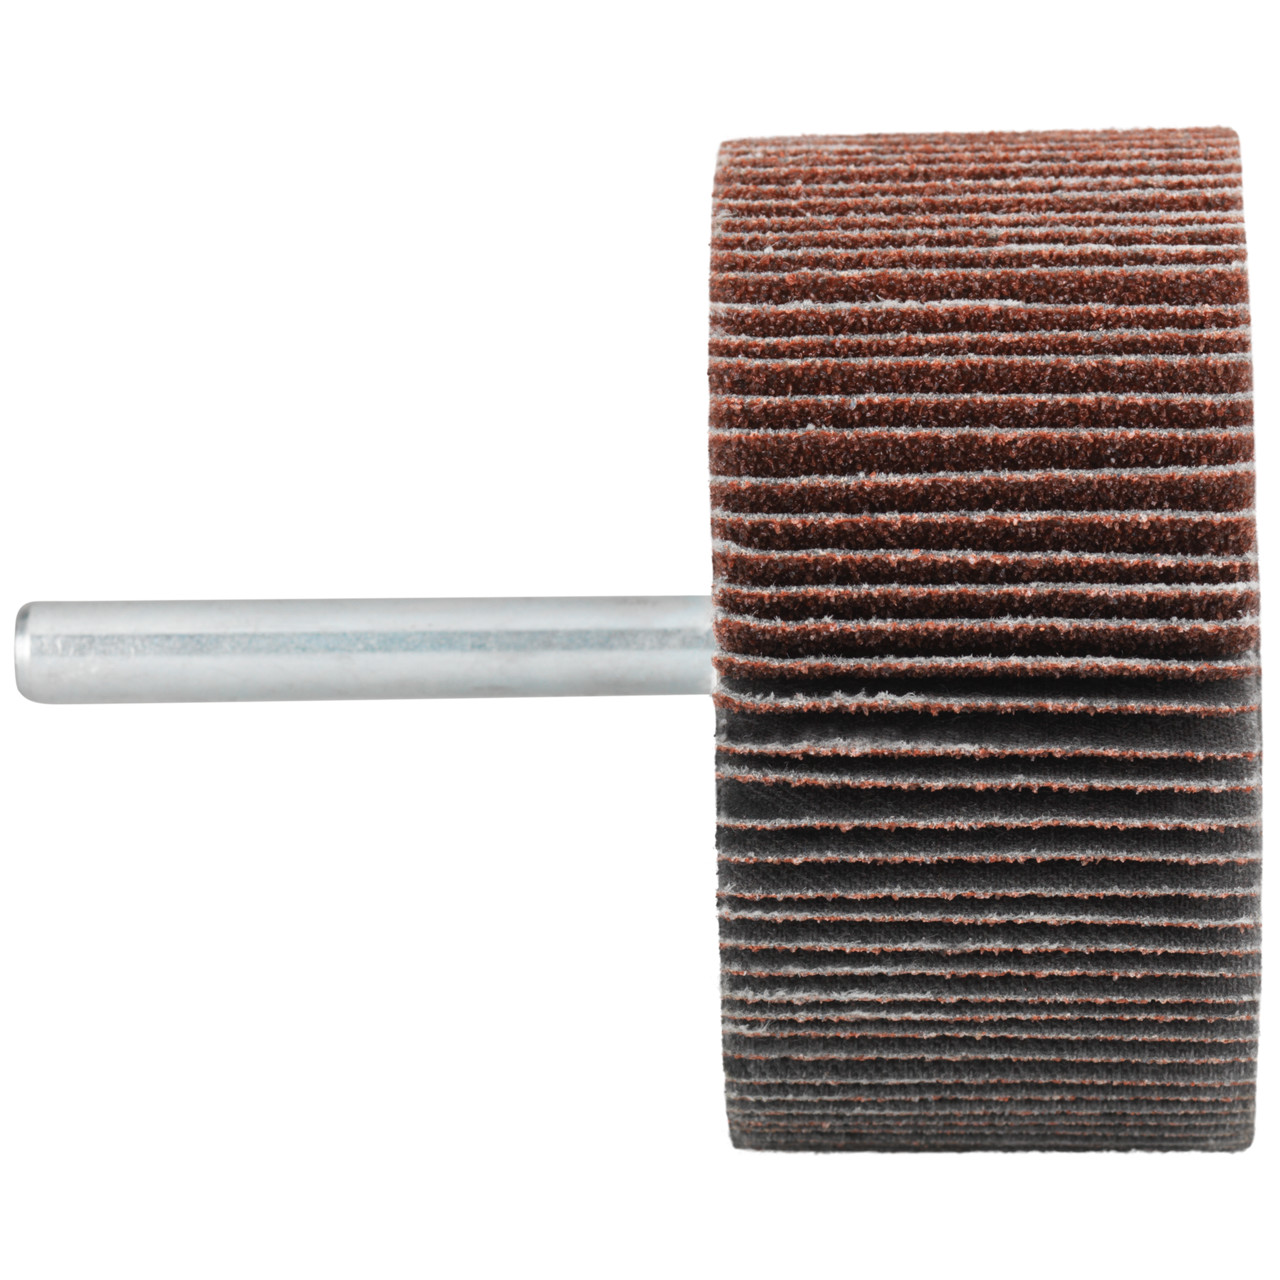 Tyrolit A-P01 C X Pennen DxD 20x10 Voor staal, roestvast staal en non-ferrometalen, P120, vorm: 52LA, Art. 816833